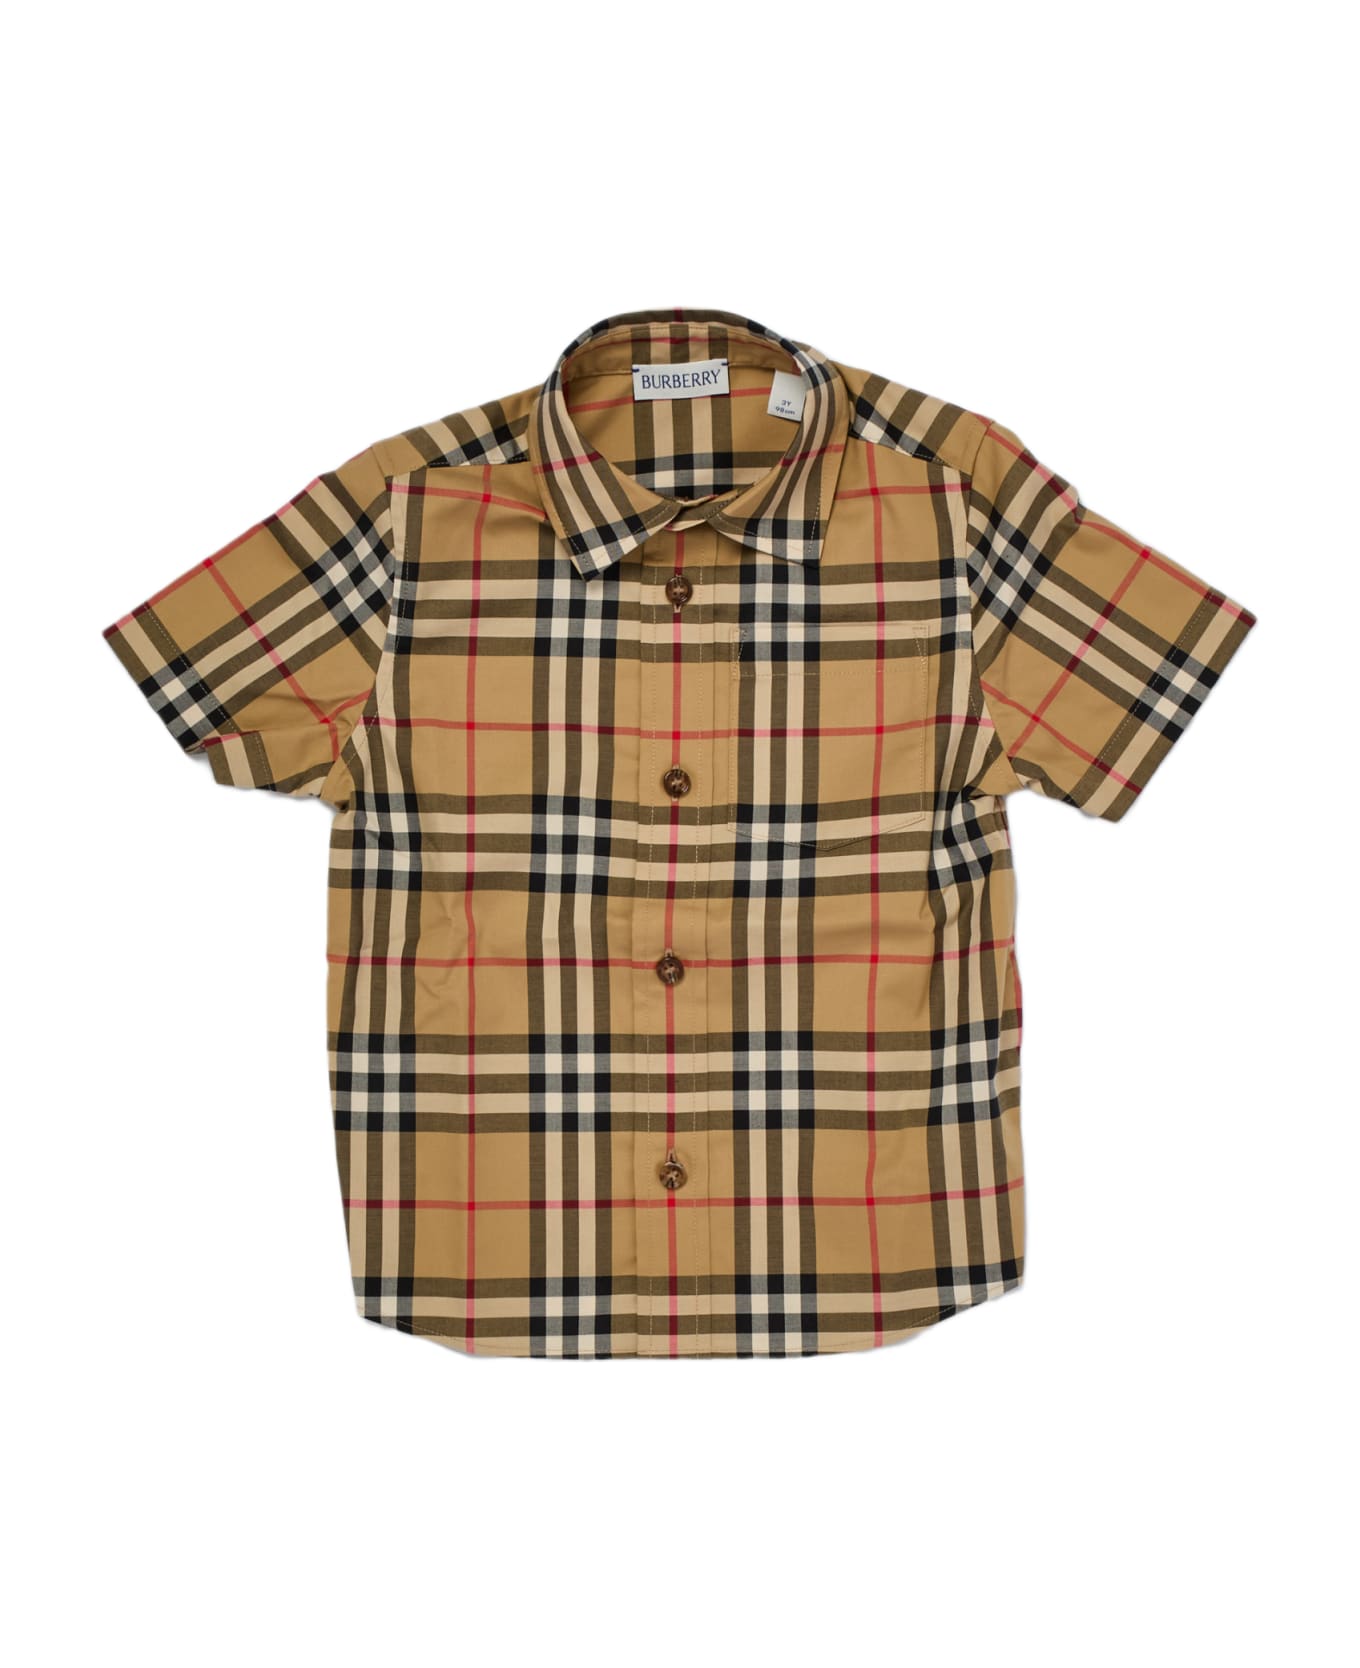 Burberry Owen Shirt Shirt - CHECK BEIGE シャツ